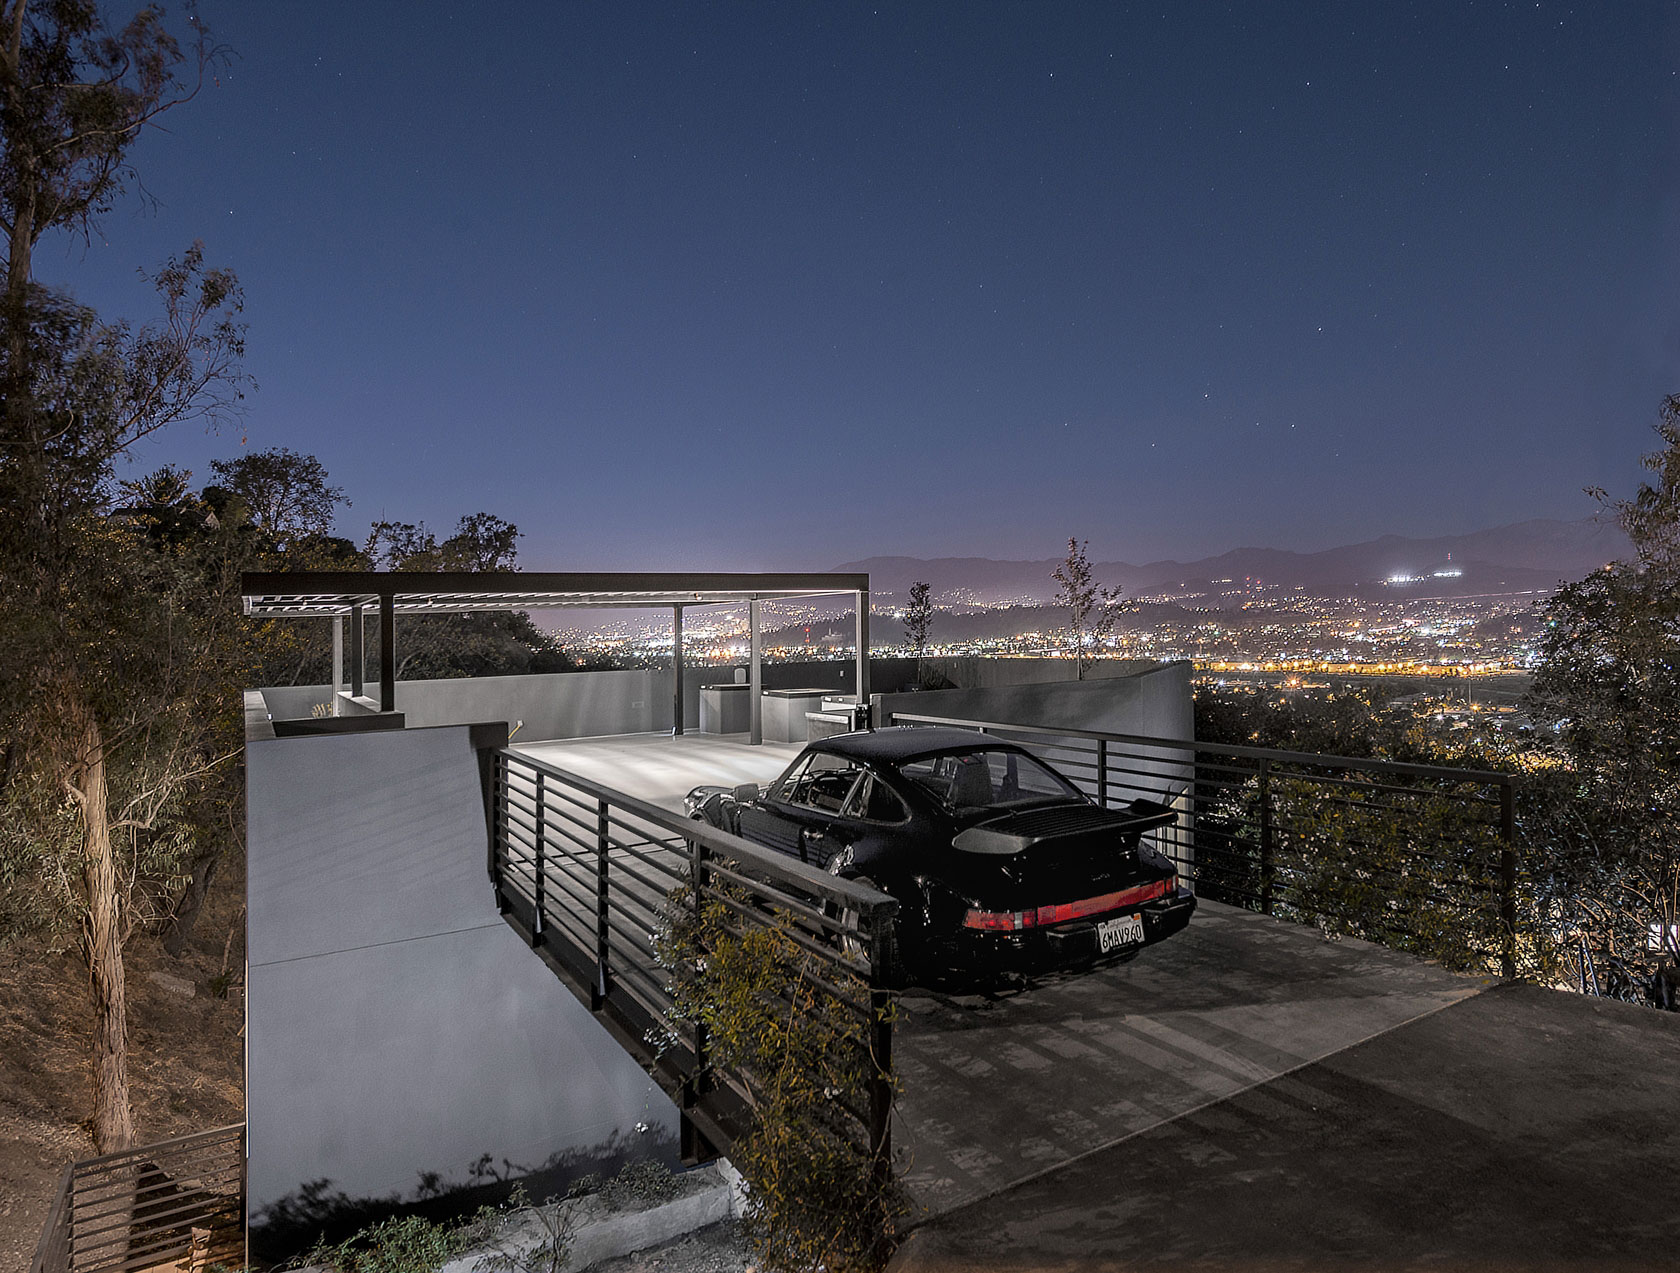 Уникальный особняк с автостоянкой на крыше от Anonymous, Лос-Анджелес, США